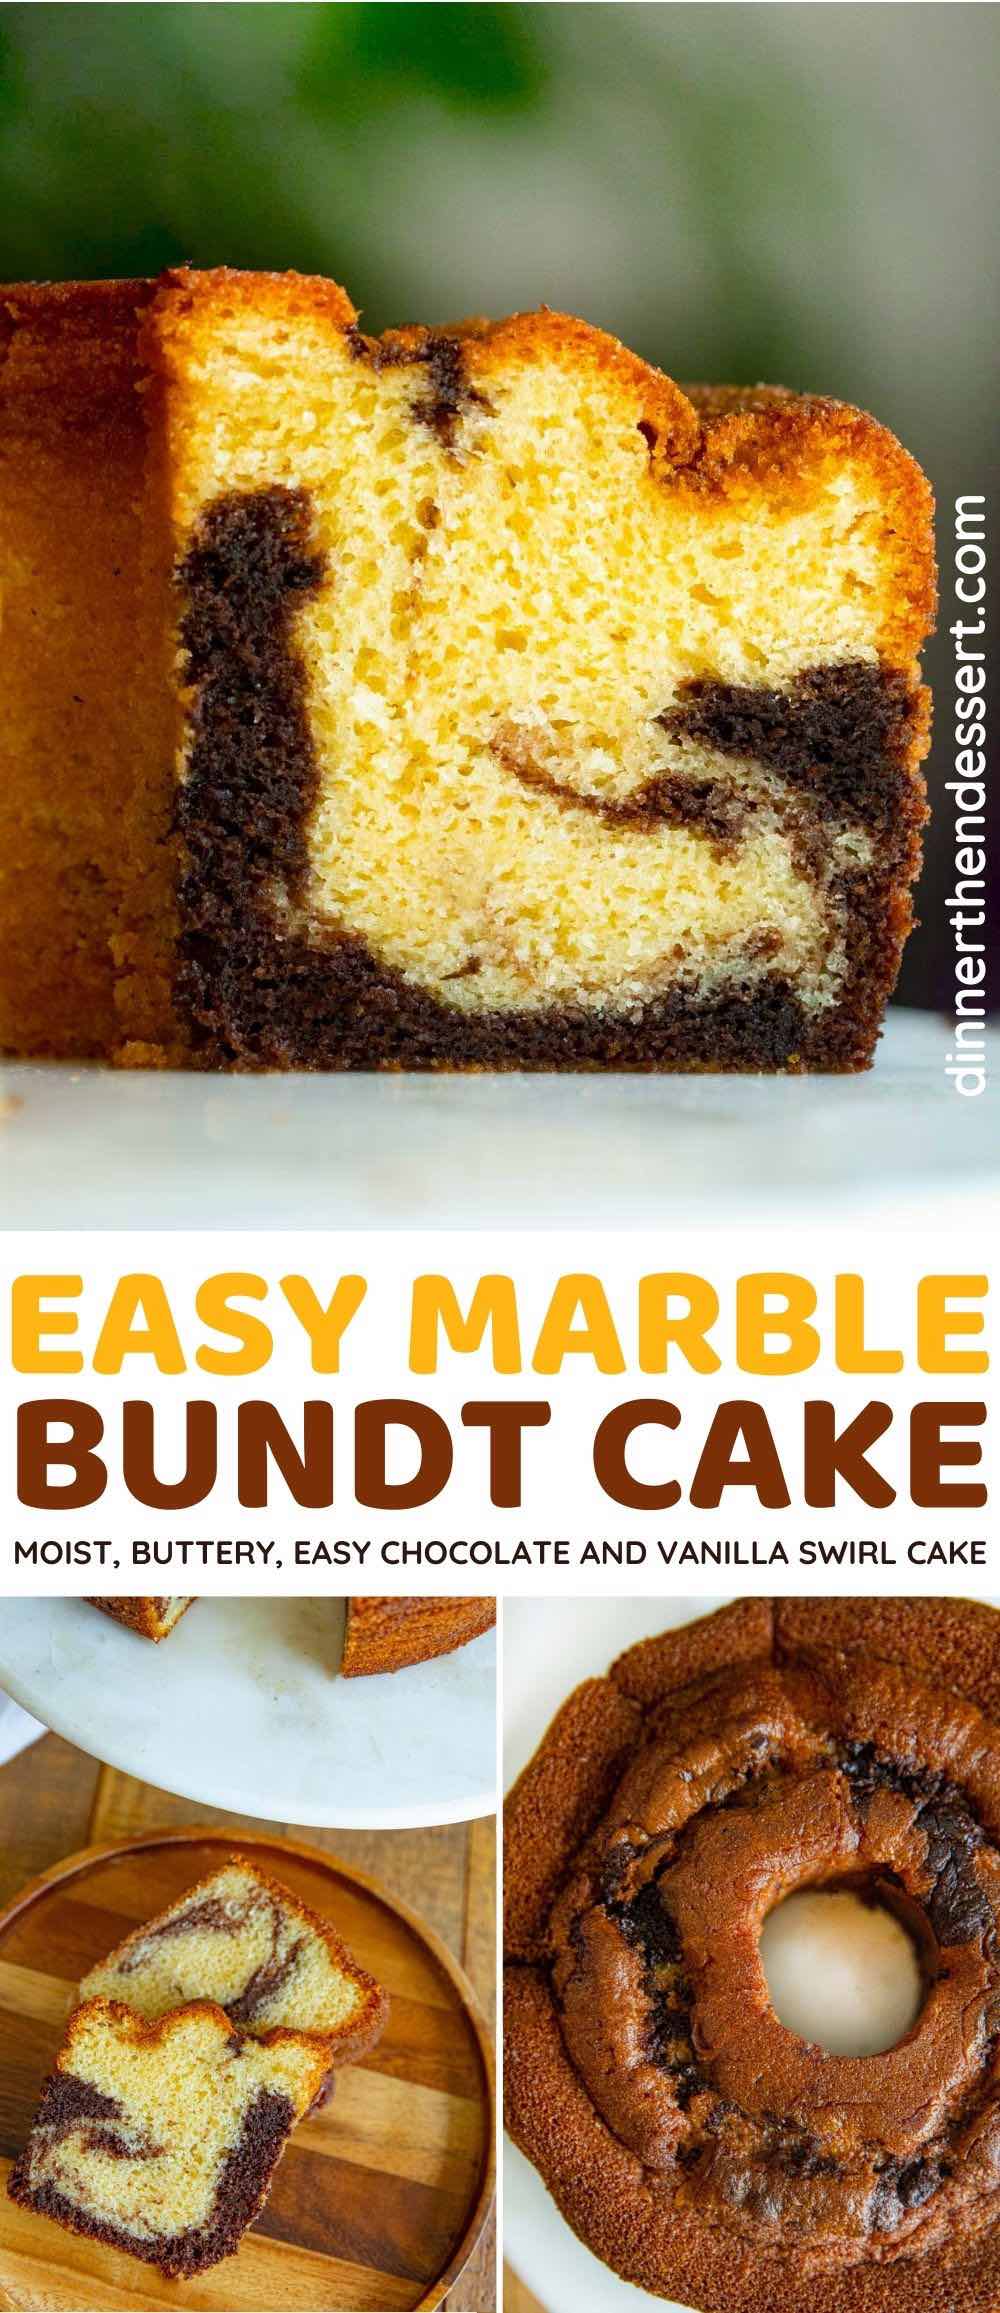 https://dinnerthendessert.com/wp-content/uploads/2020/03/Marble-Bundt-Cake-L.jpg